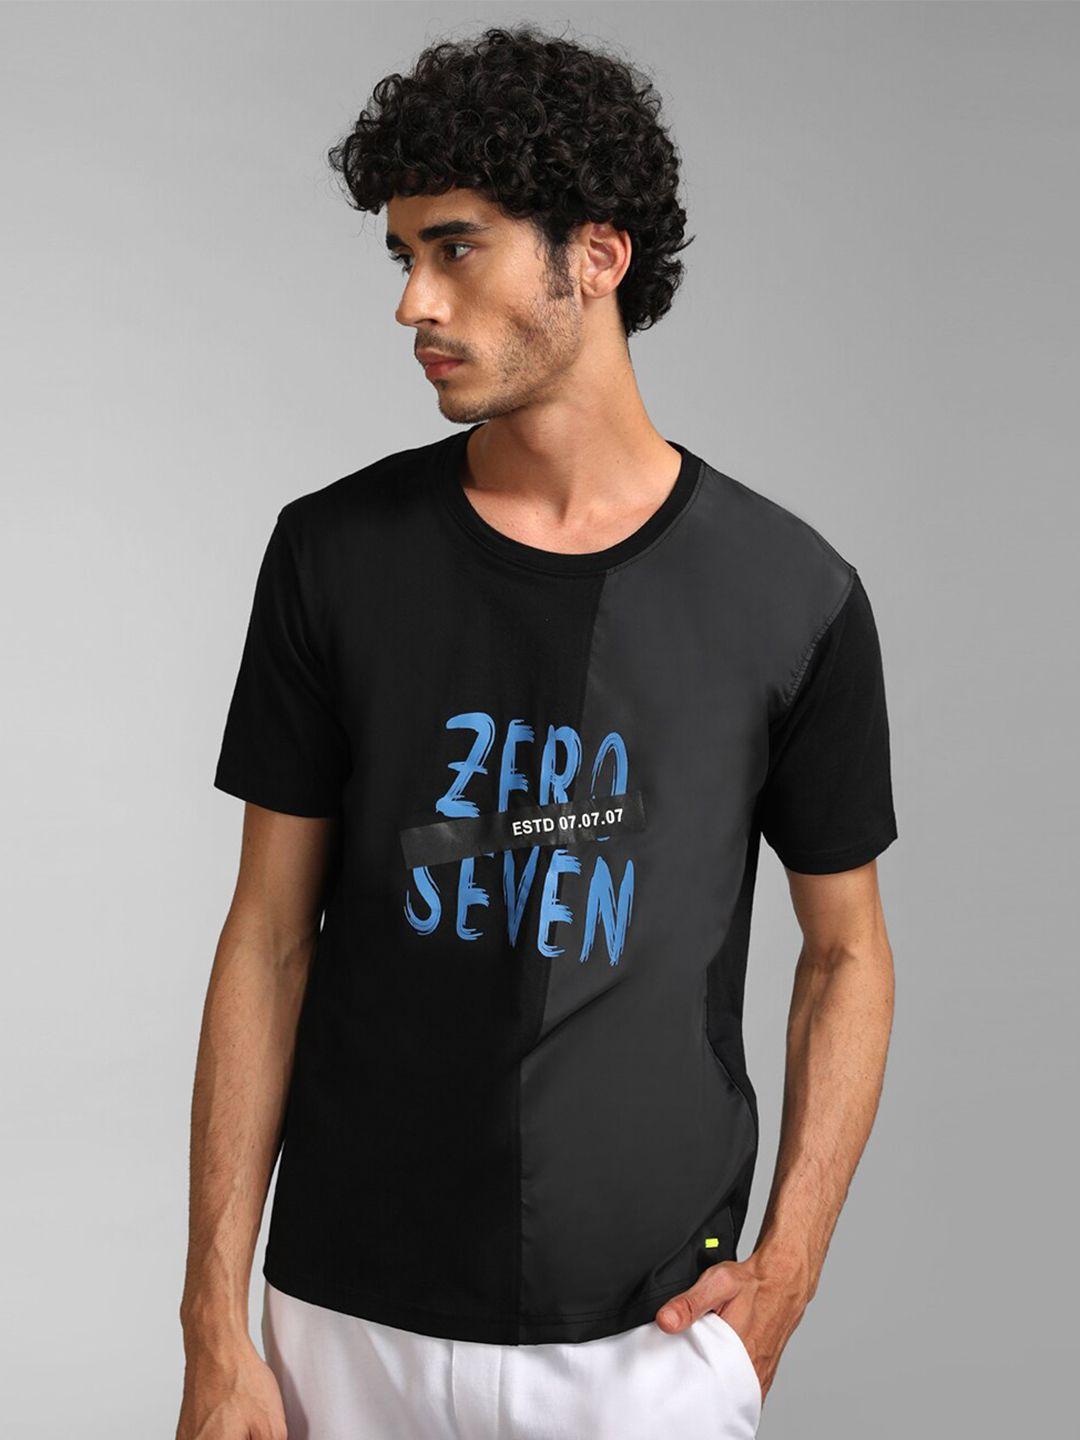 kz07 by kazo men typography printed cotton t-shirt